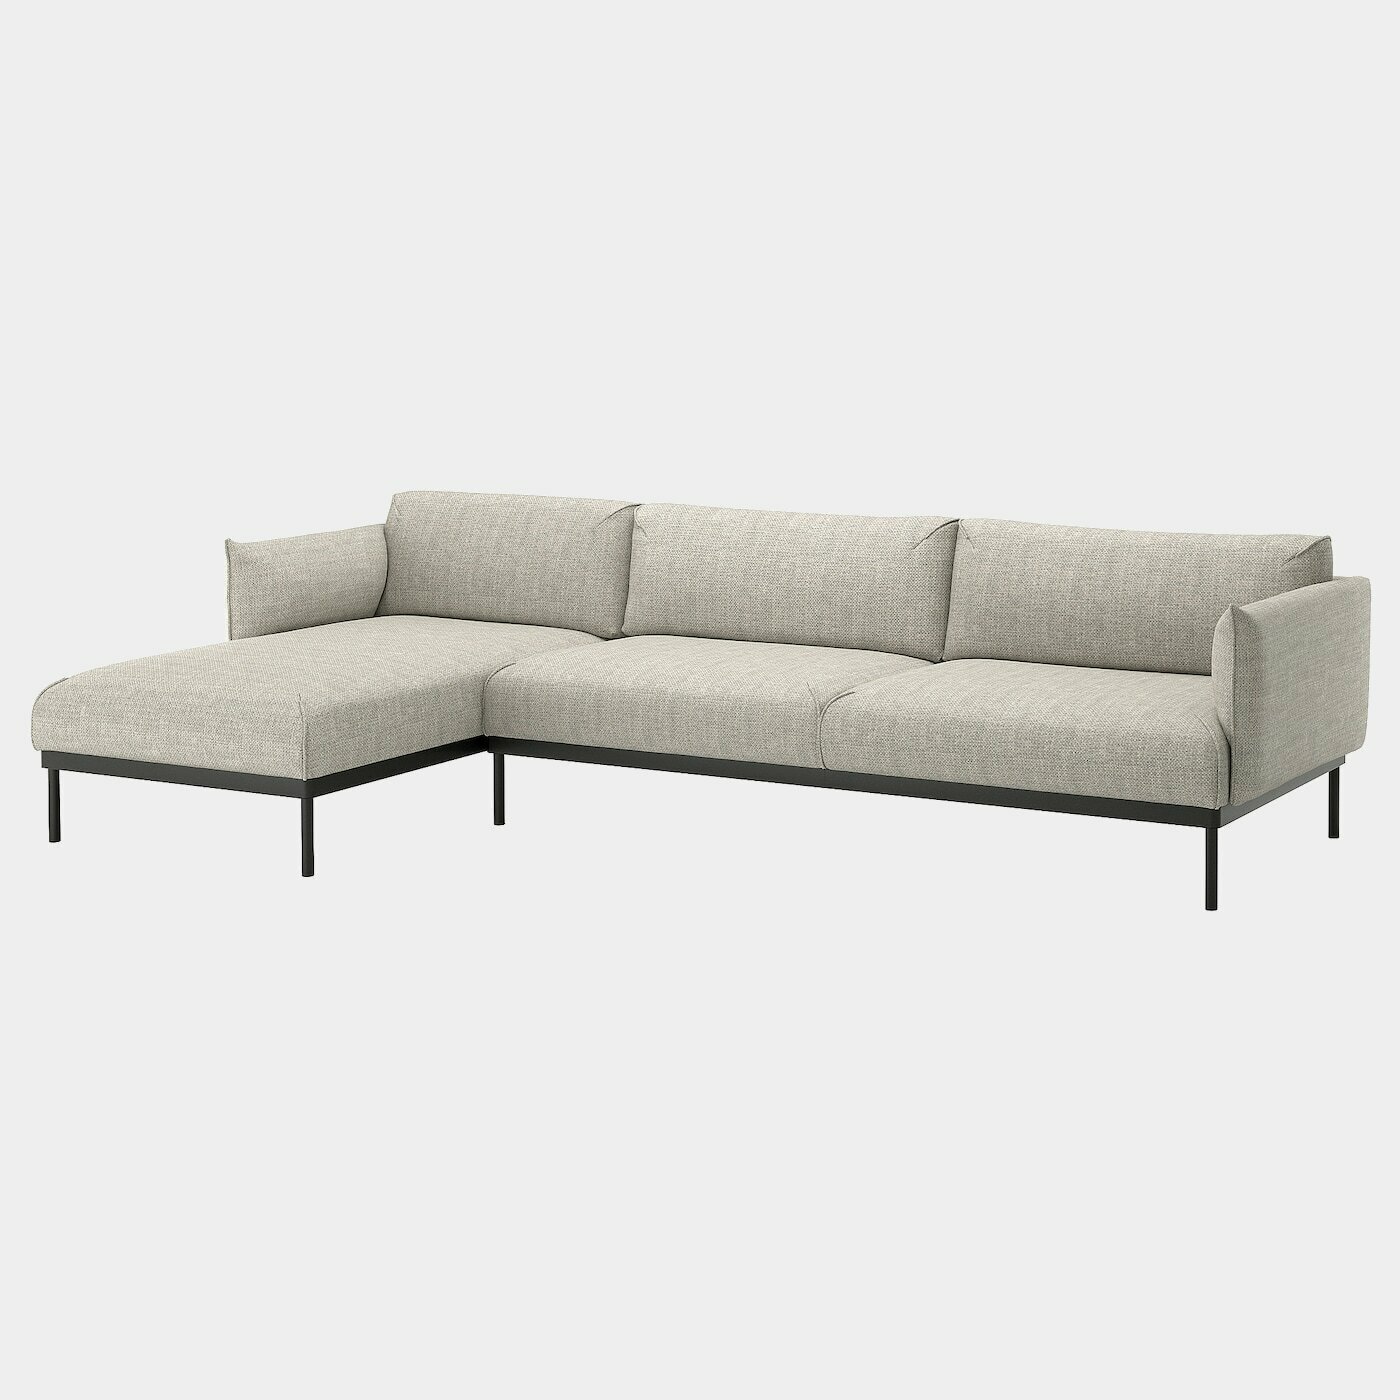 ÄPPLARYD 4er-Sofa mit Récamiere  -  - Möbel Ideen für dein Zuhause von Home Trends. Möbel Trends von Social Media Influencer für dein Skandi Zuhause.